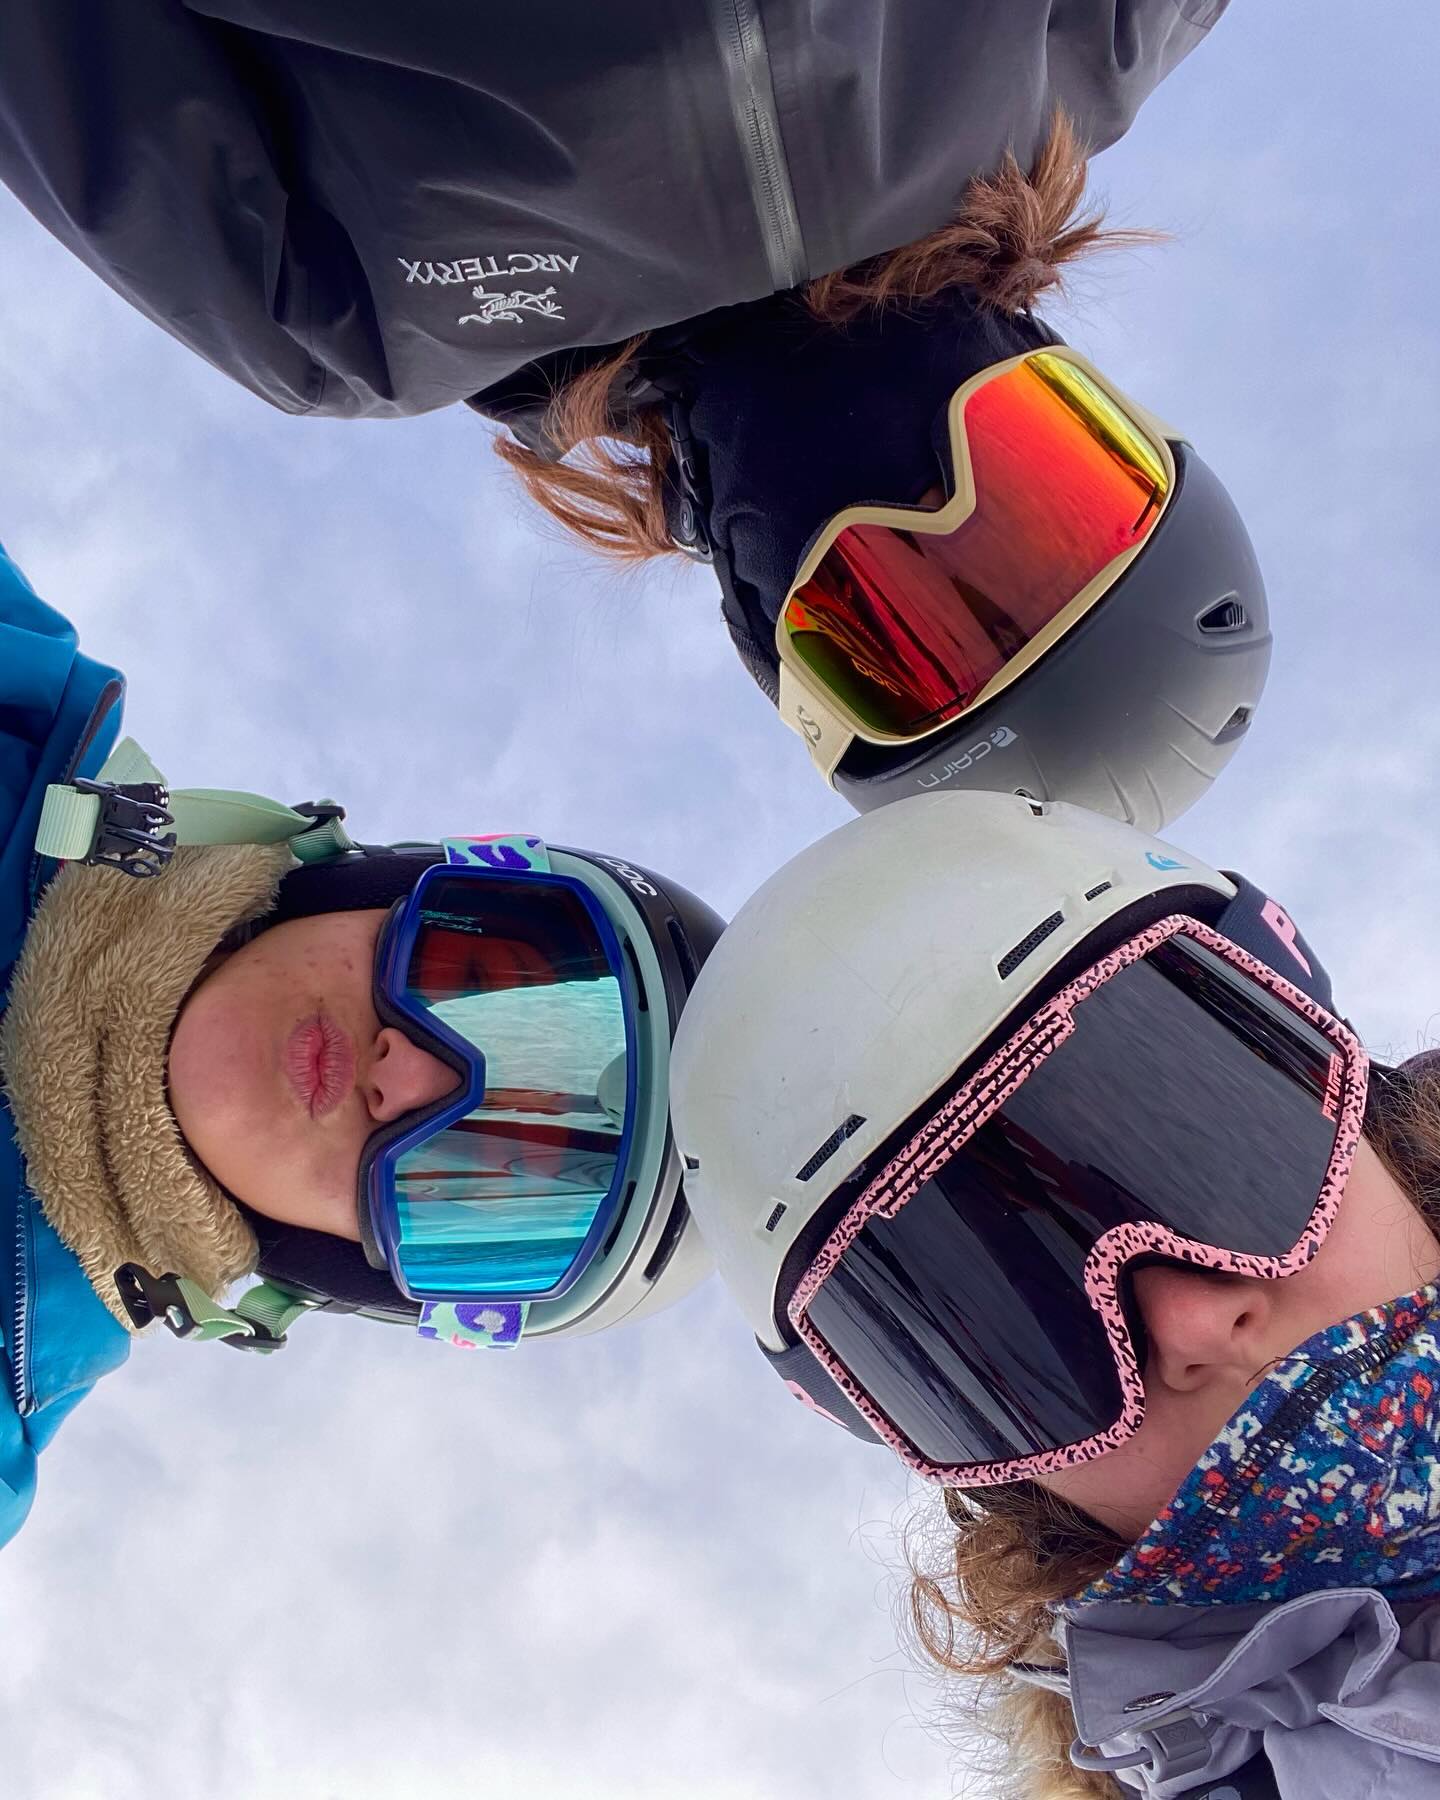 Un choix judicieux pour ces trois skieuses. Des masques de ski qui vont vites ✌️
@pit_viper 
@scottsportsfrance 
@smithoptics 
.
#masquesdeski #goggles #snowgoggles #chamonixmontblanc🇫🇷 #opticienindependant #optique #optiquechaussinchamonix 
@denis_chaussin